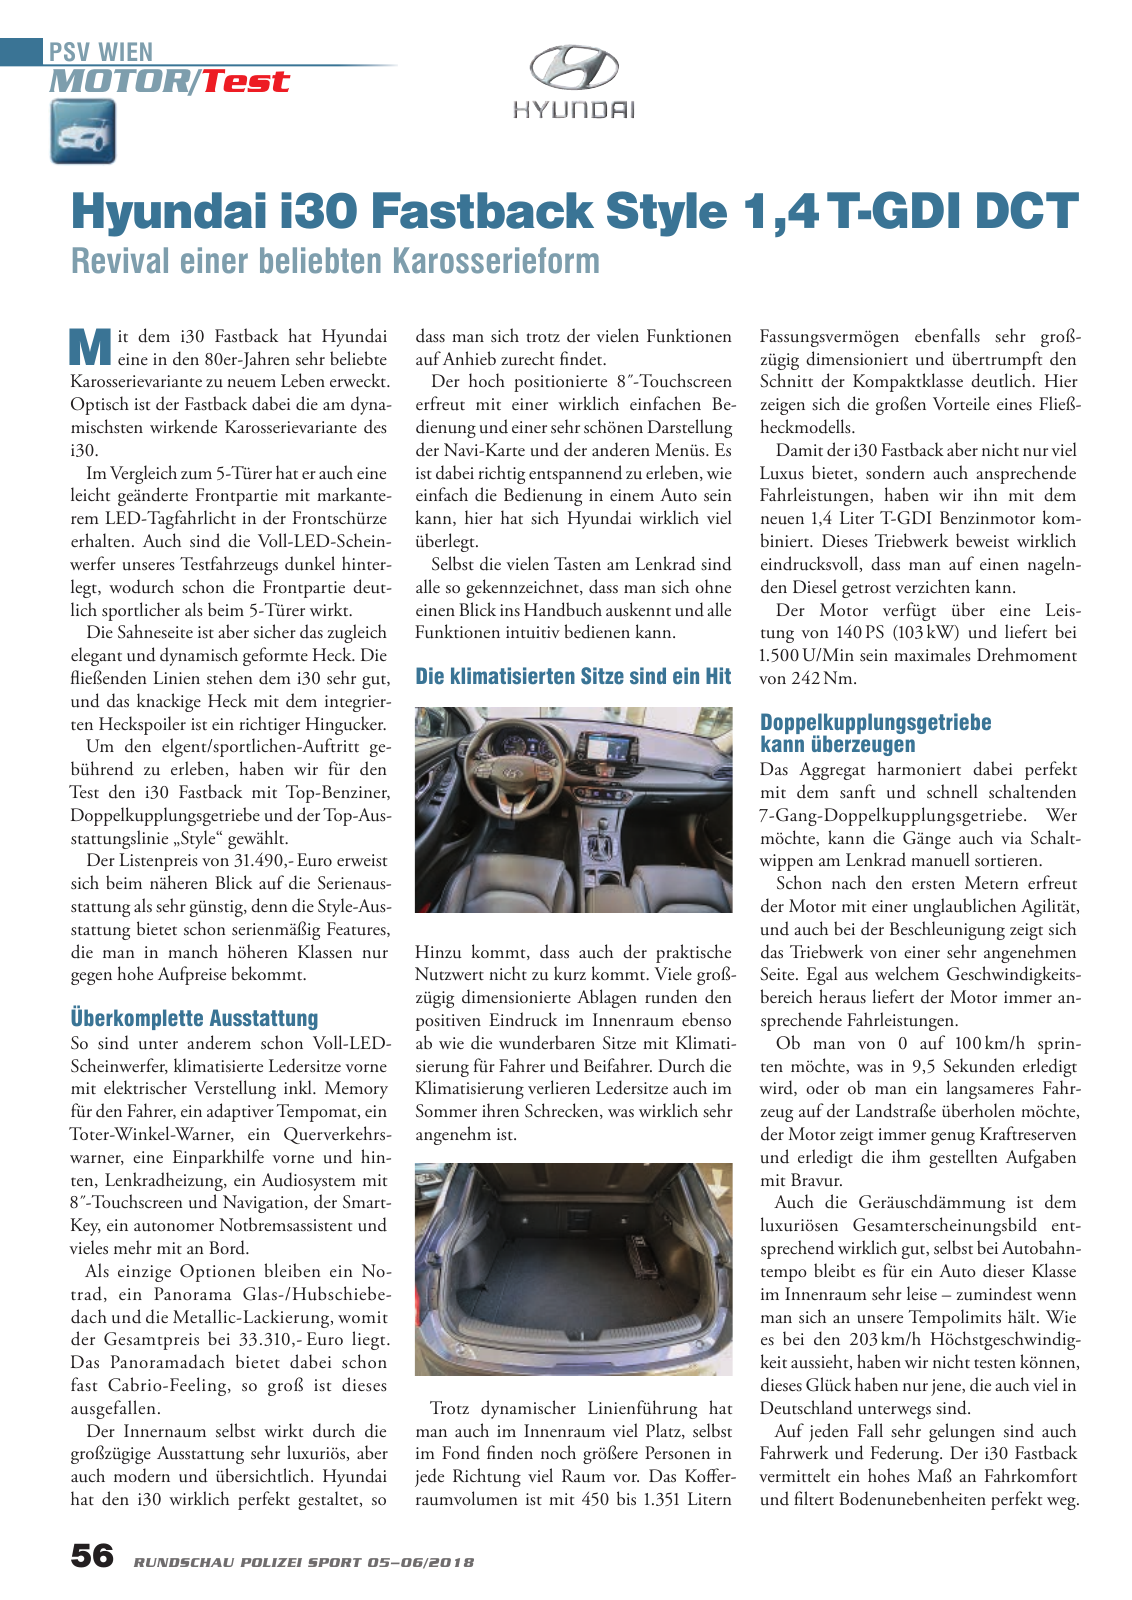 Vorschau Rundschau Polizei Sport 05-06/2018 Seite 56